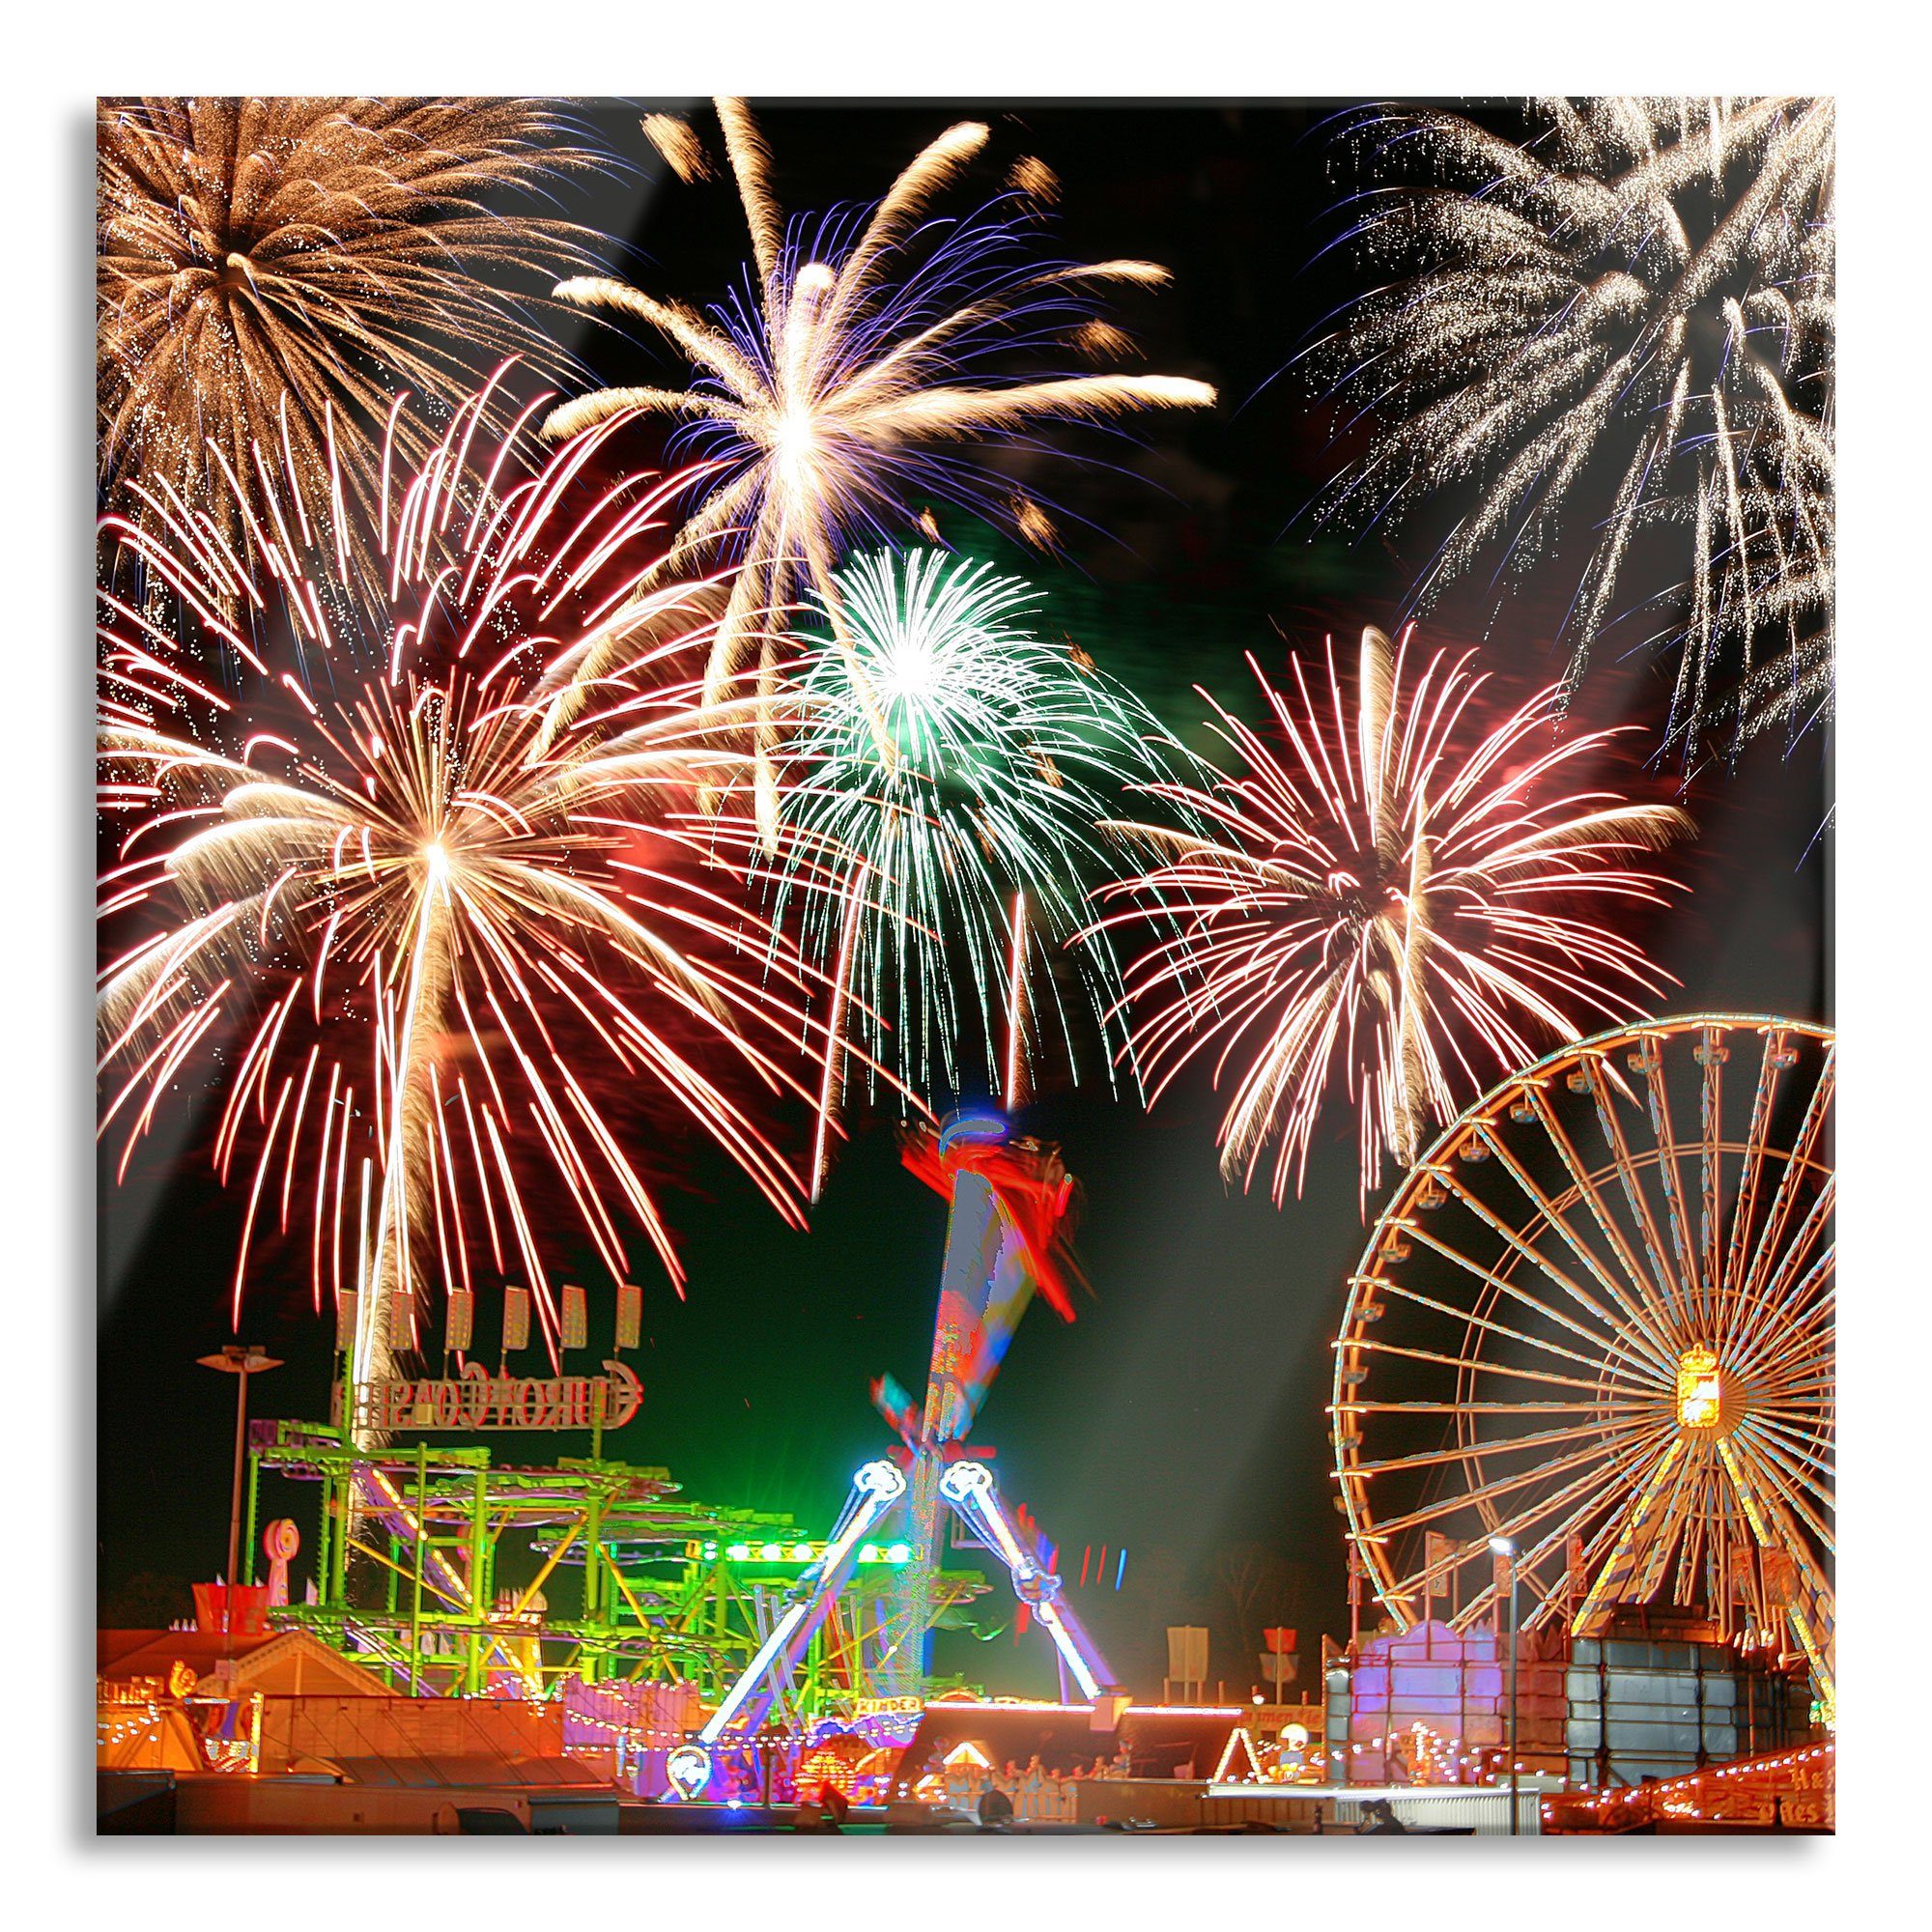 Pixxprint Glasbild Silvester Riesenrad Feuerwerk, Silvester Riesenrad Feuerwerk (1 St), Glasbild aus Echtglas, inkl. Aufhängungen und Abstandshalter